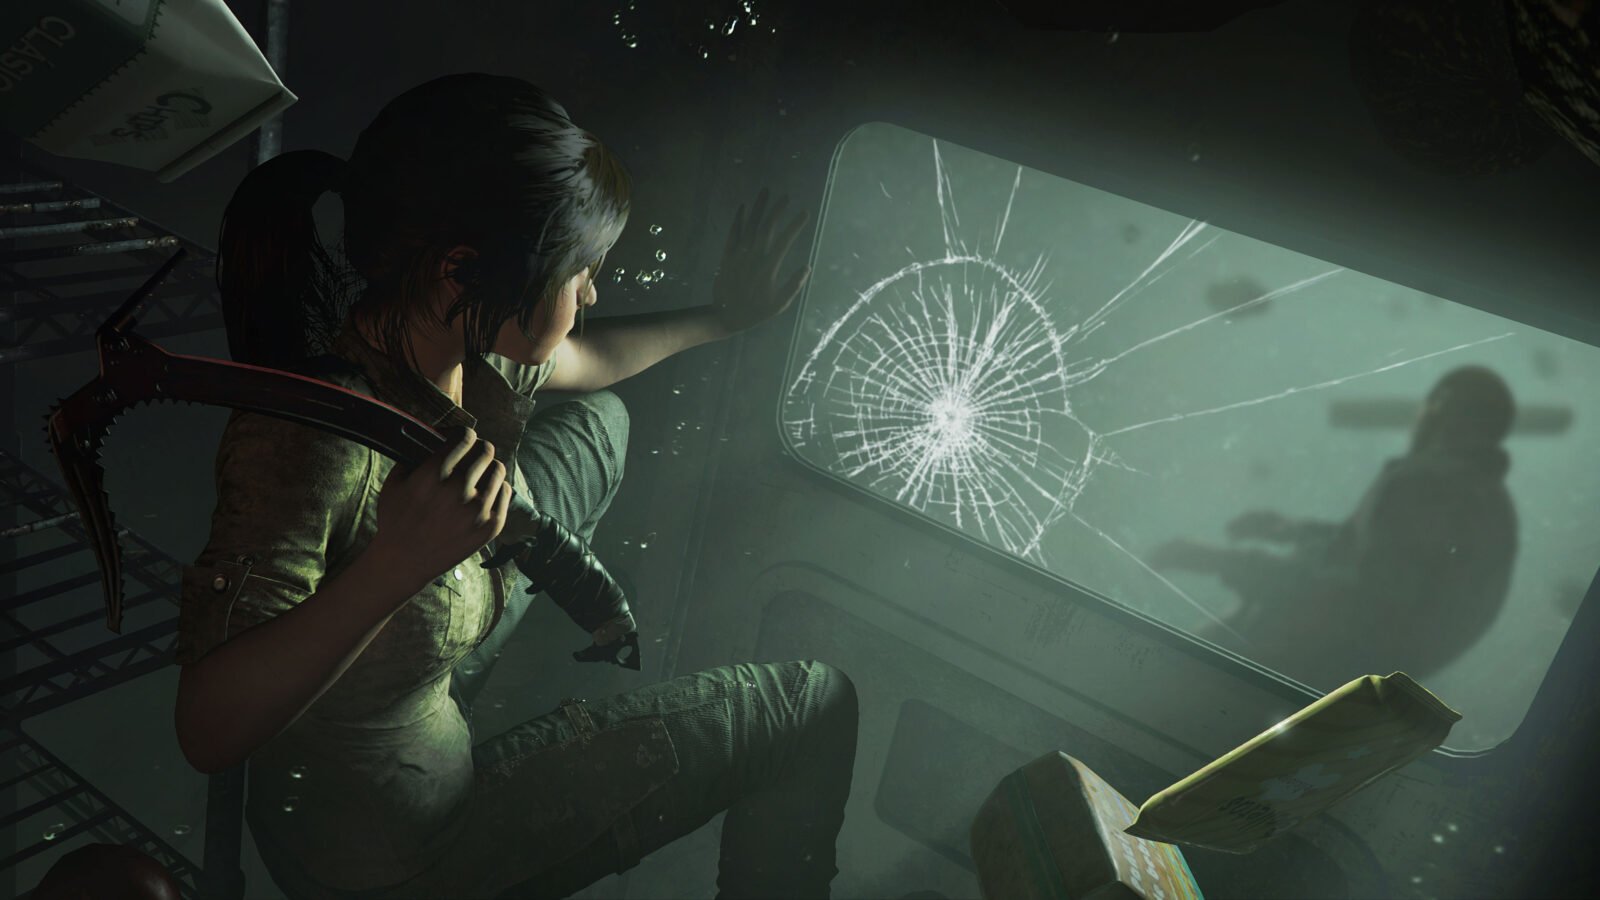 Série Tomb Raider na Netflix: A Lenda de Lara Croft é revelada num trailer  